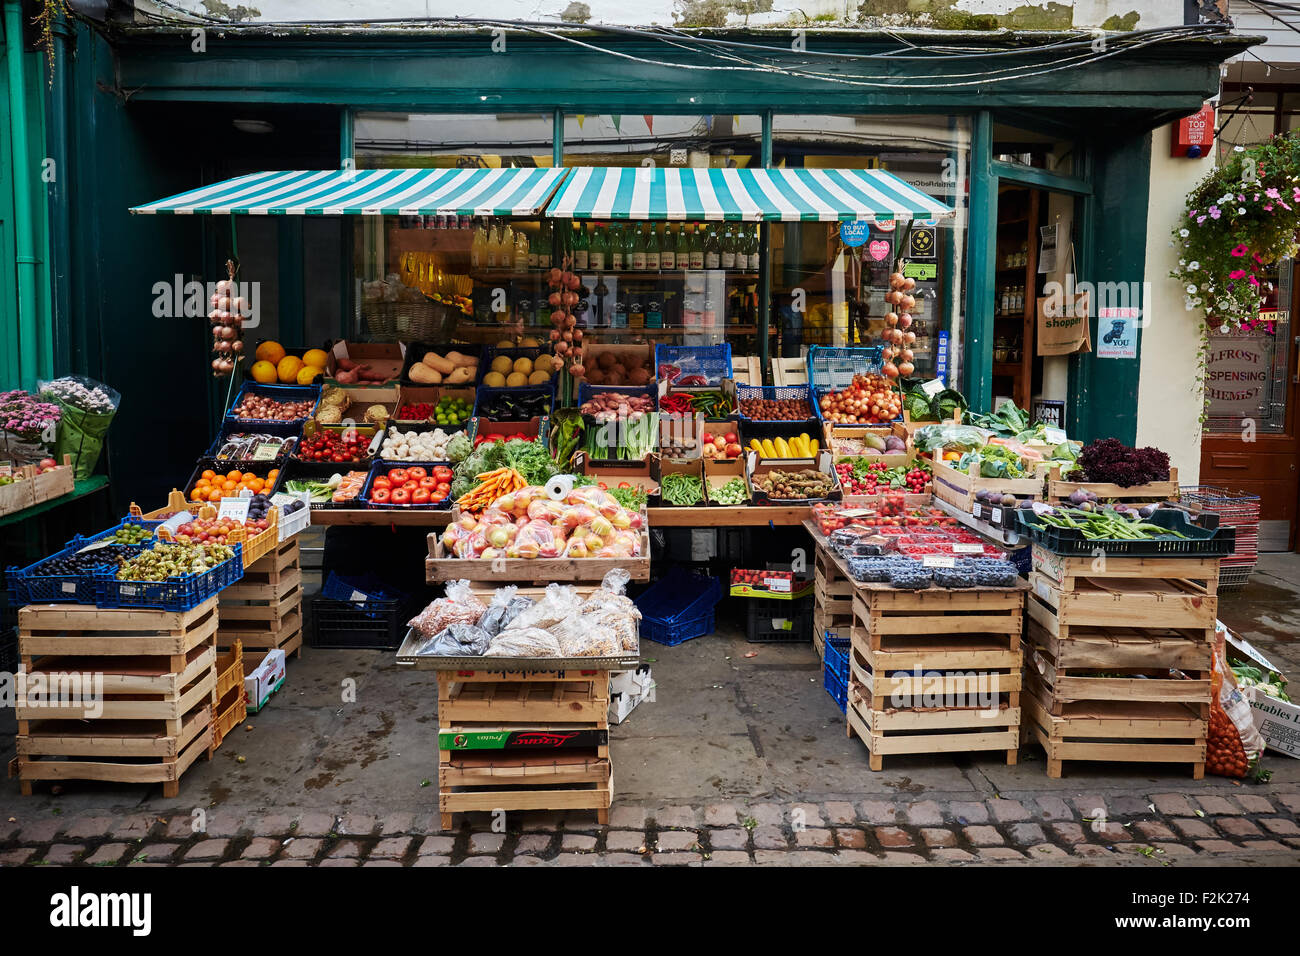 Avant-boutique de fruits et légumes, un greengrocer, à Monmouth, au pays de Galles. Banque D'Images